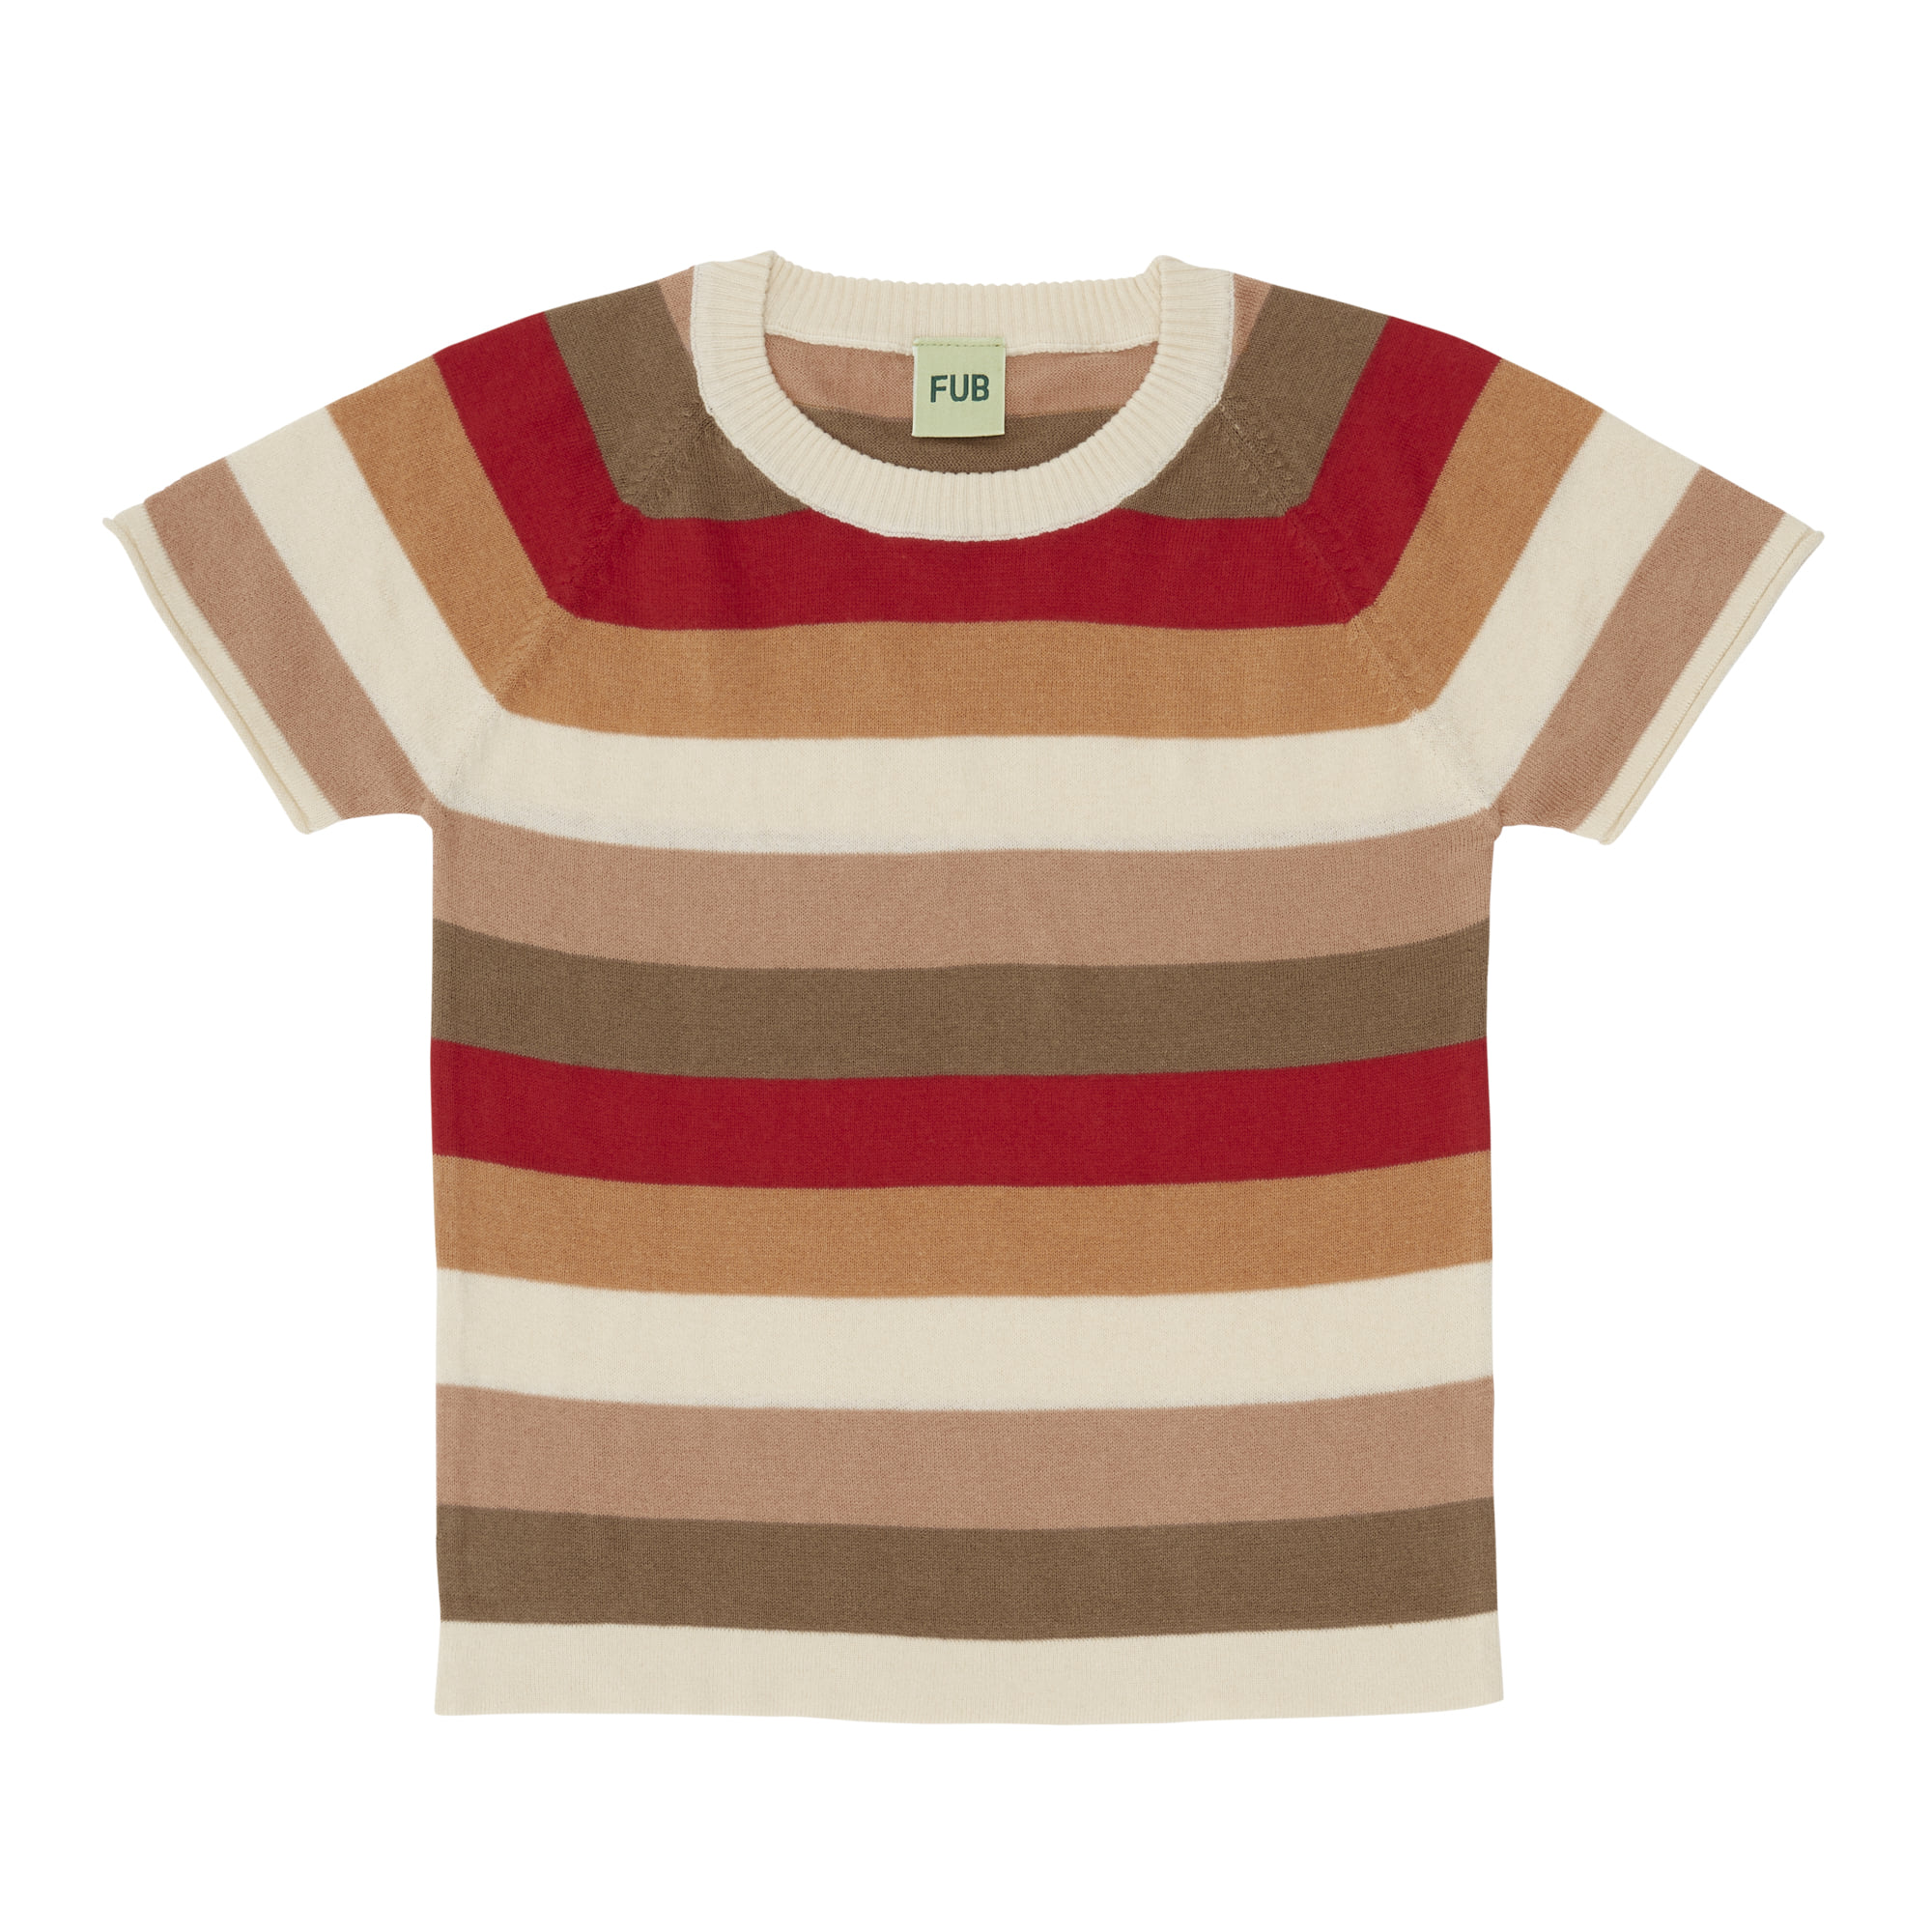 [FUB] Multi Striped T-shirt ecru